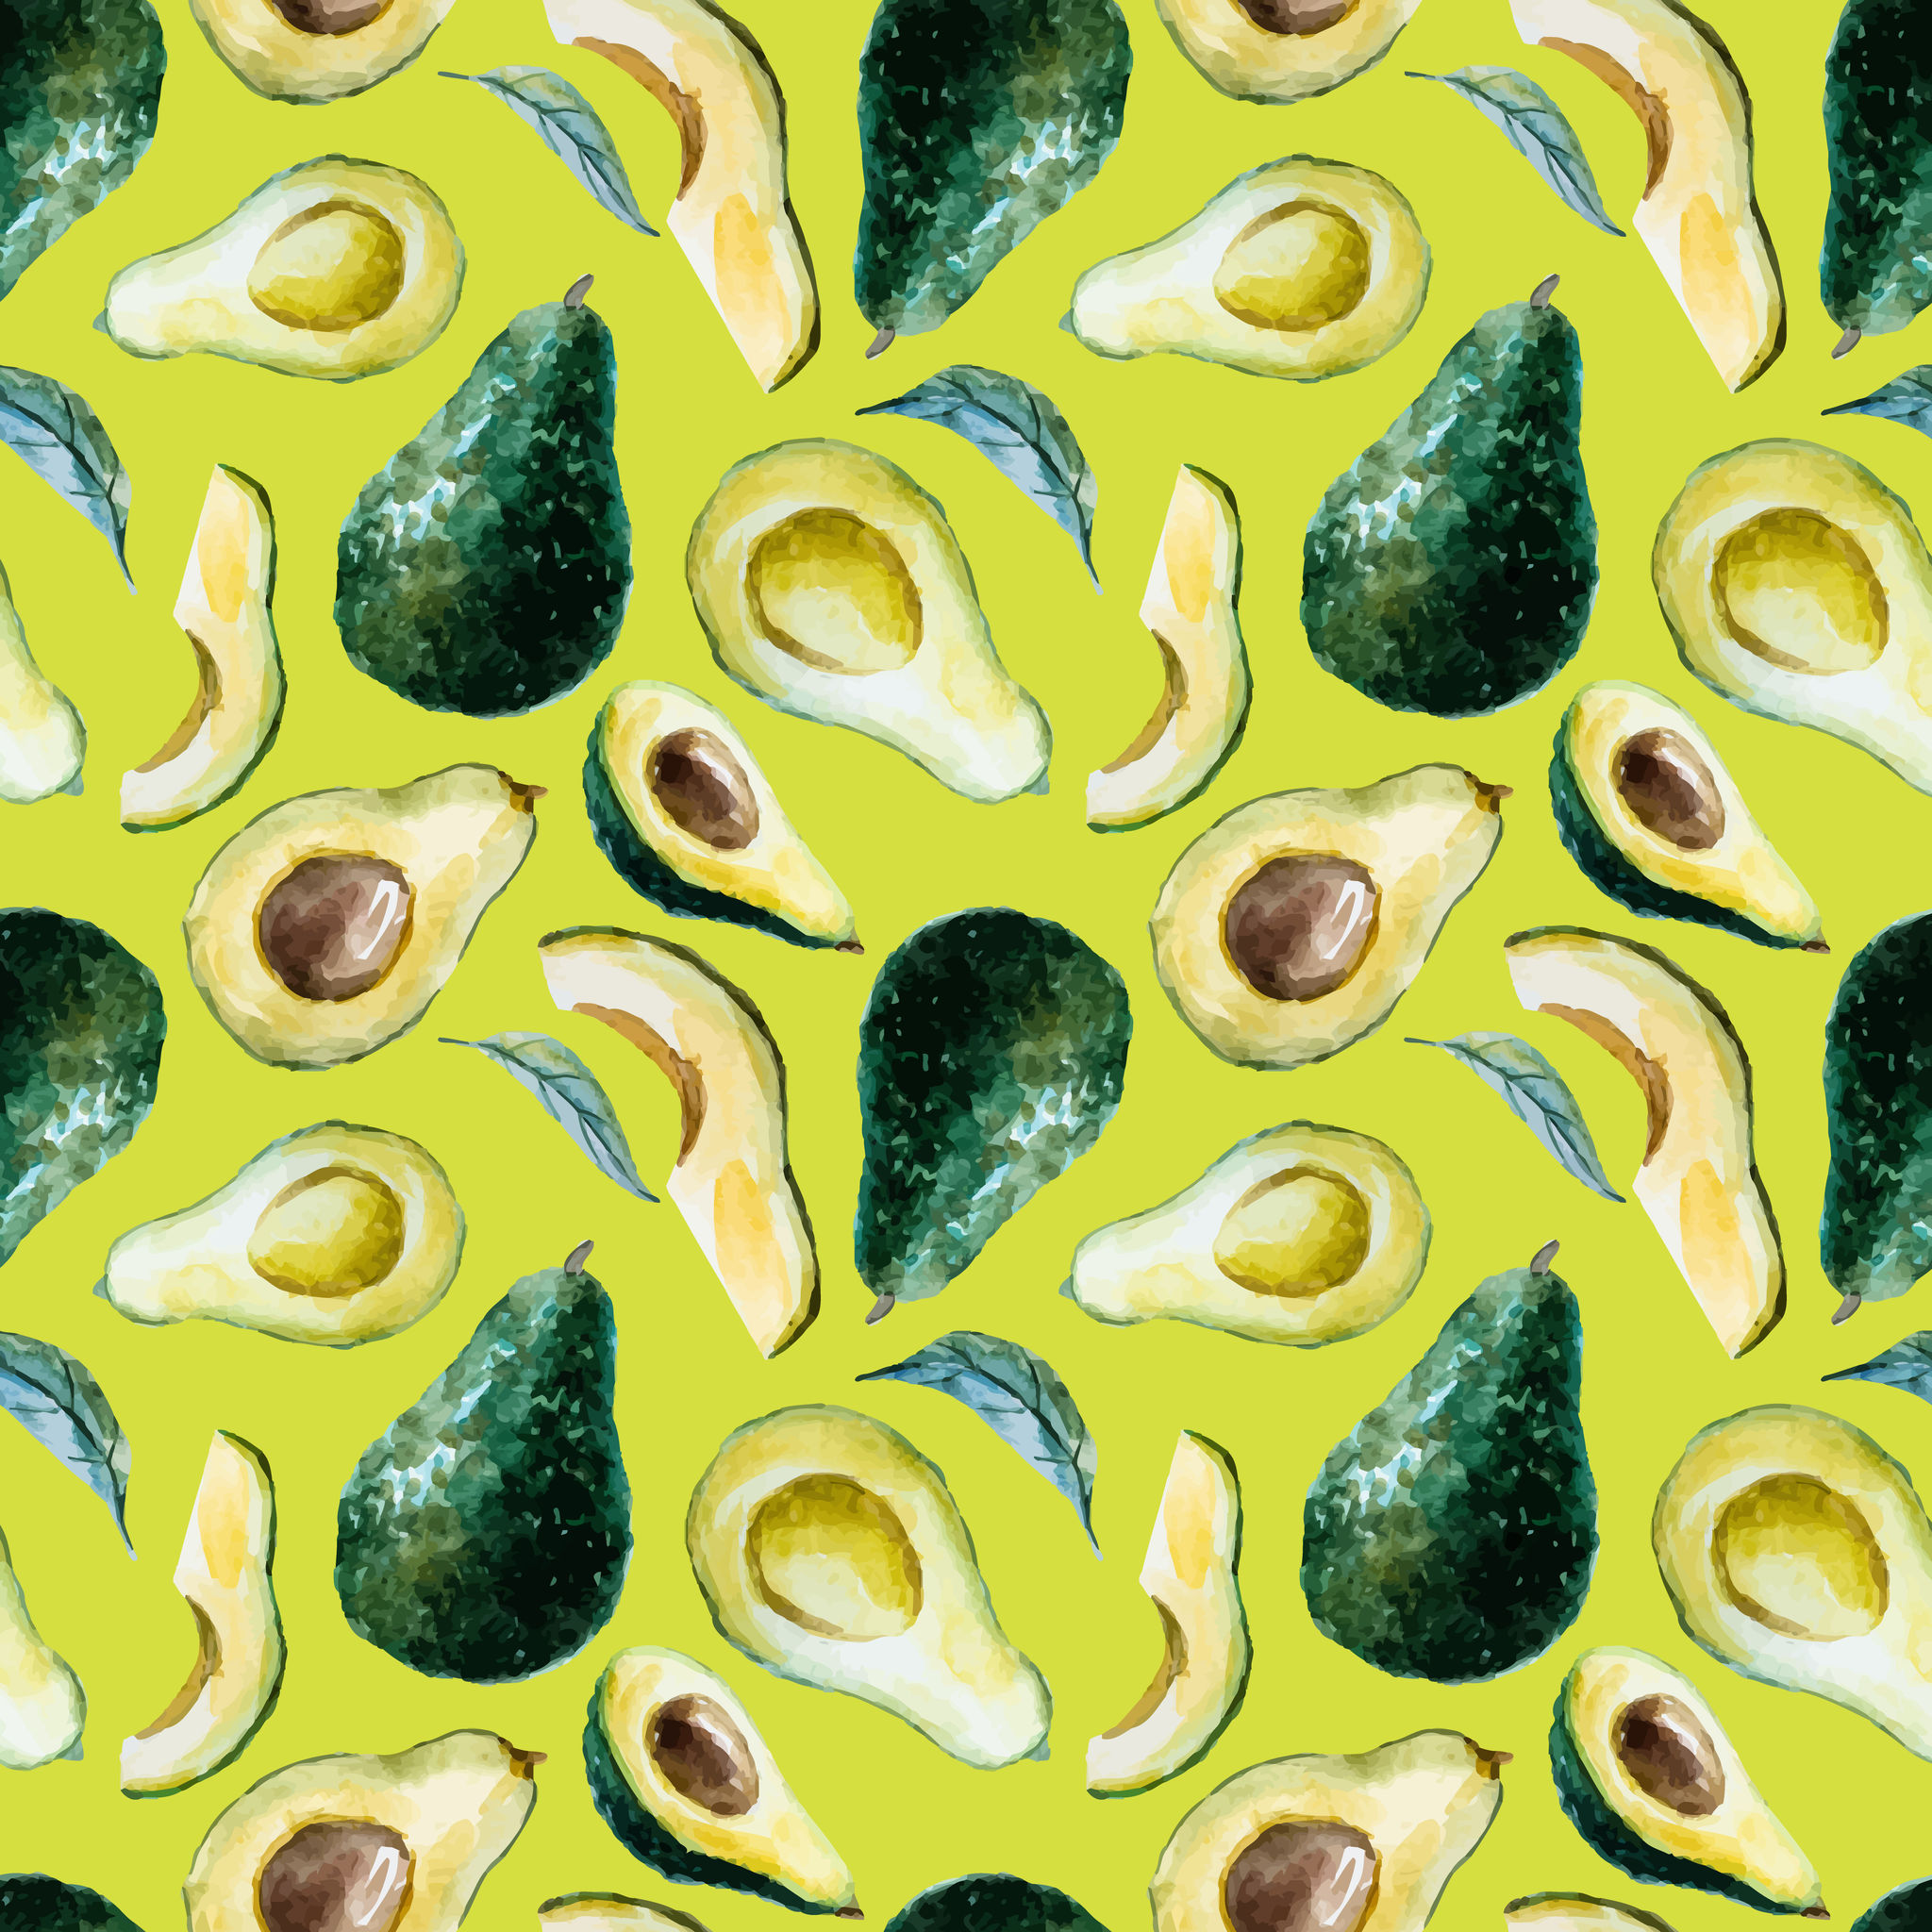 How to ripen an avocado